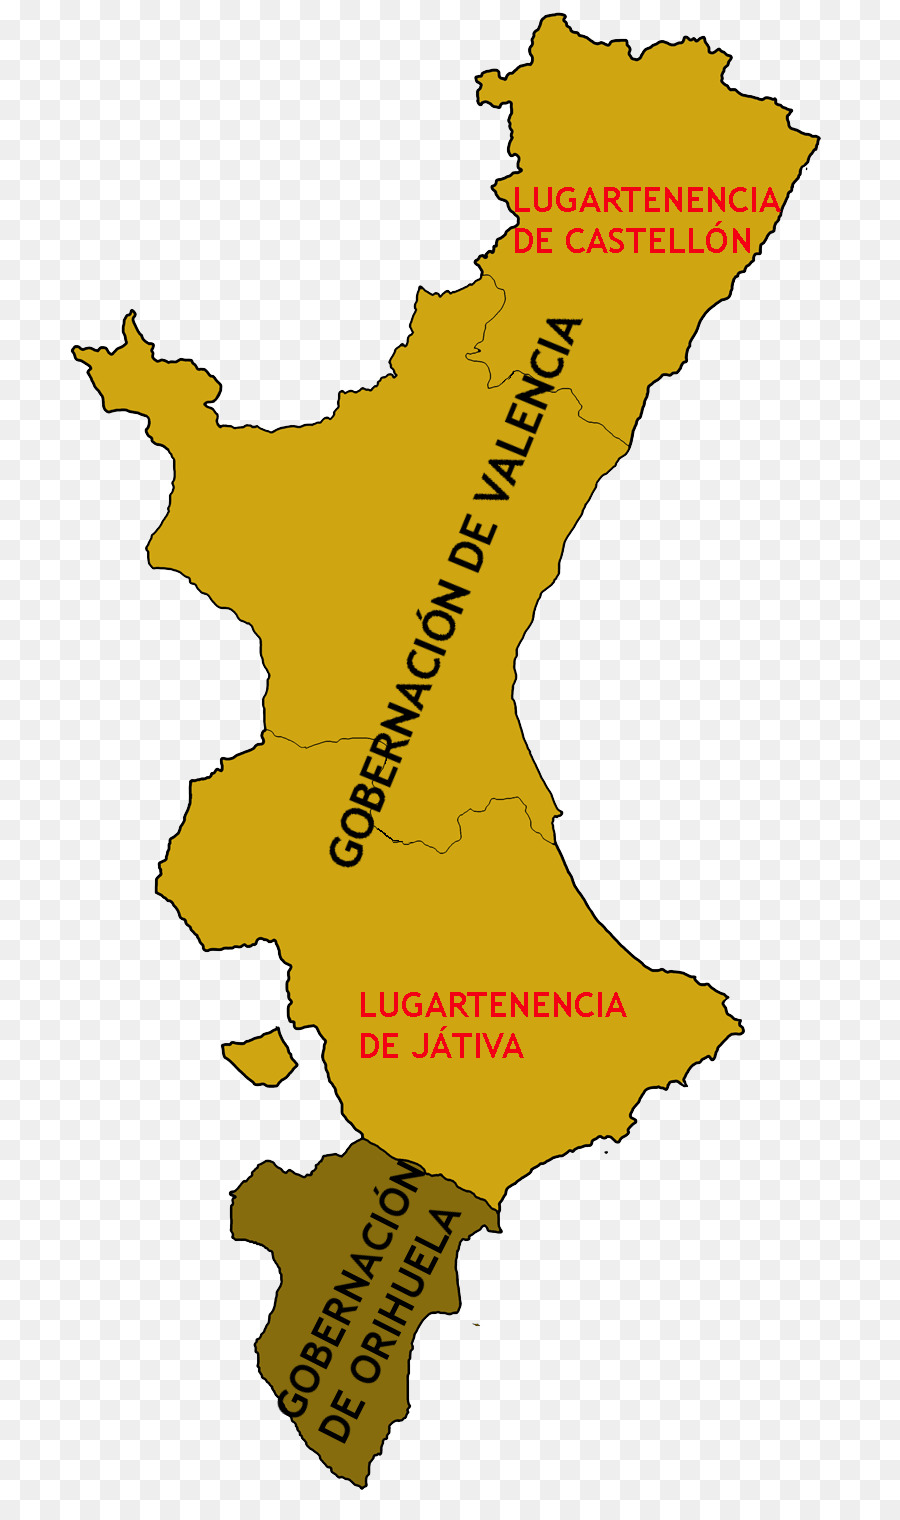 Königreich Valencia Krone von Aragon Reich von Valencia - scheune